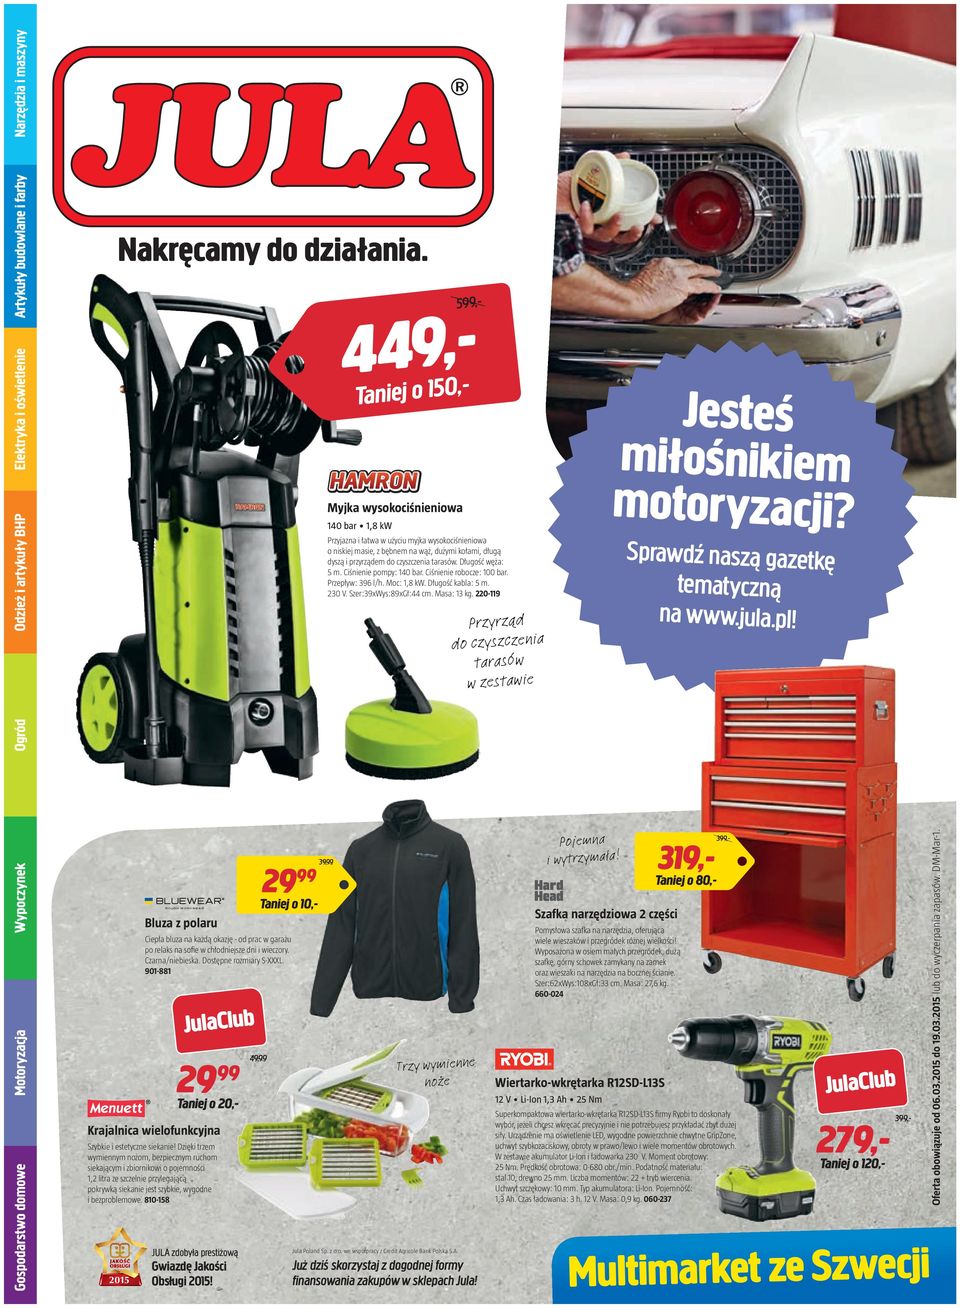 220-119 Przyrząd do czyszczenia tarasów w zestawie Jesteś miłośnikiem motoryzacji? Sprawdź naszą gazetkę tematyczną na www.jula.pl!